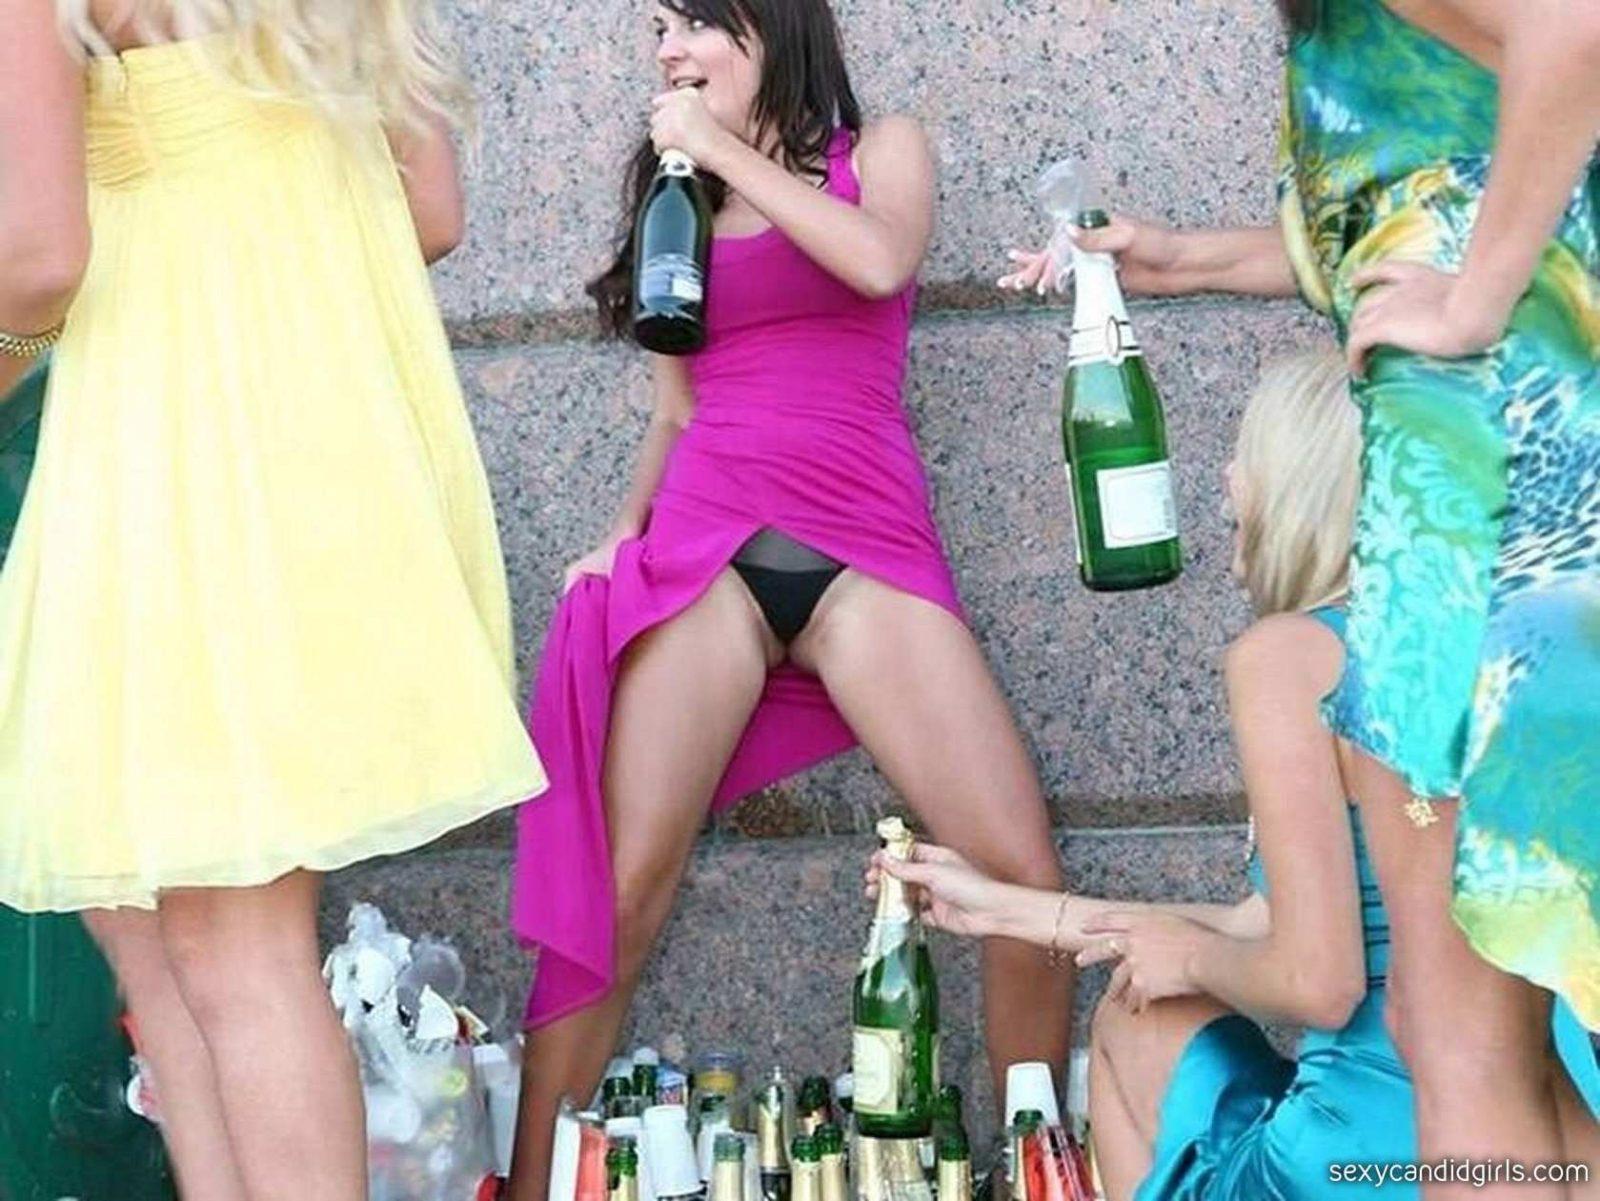 amateur photos drunk girls panties Fucking Pics Hq